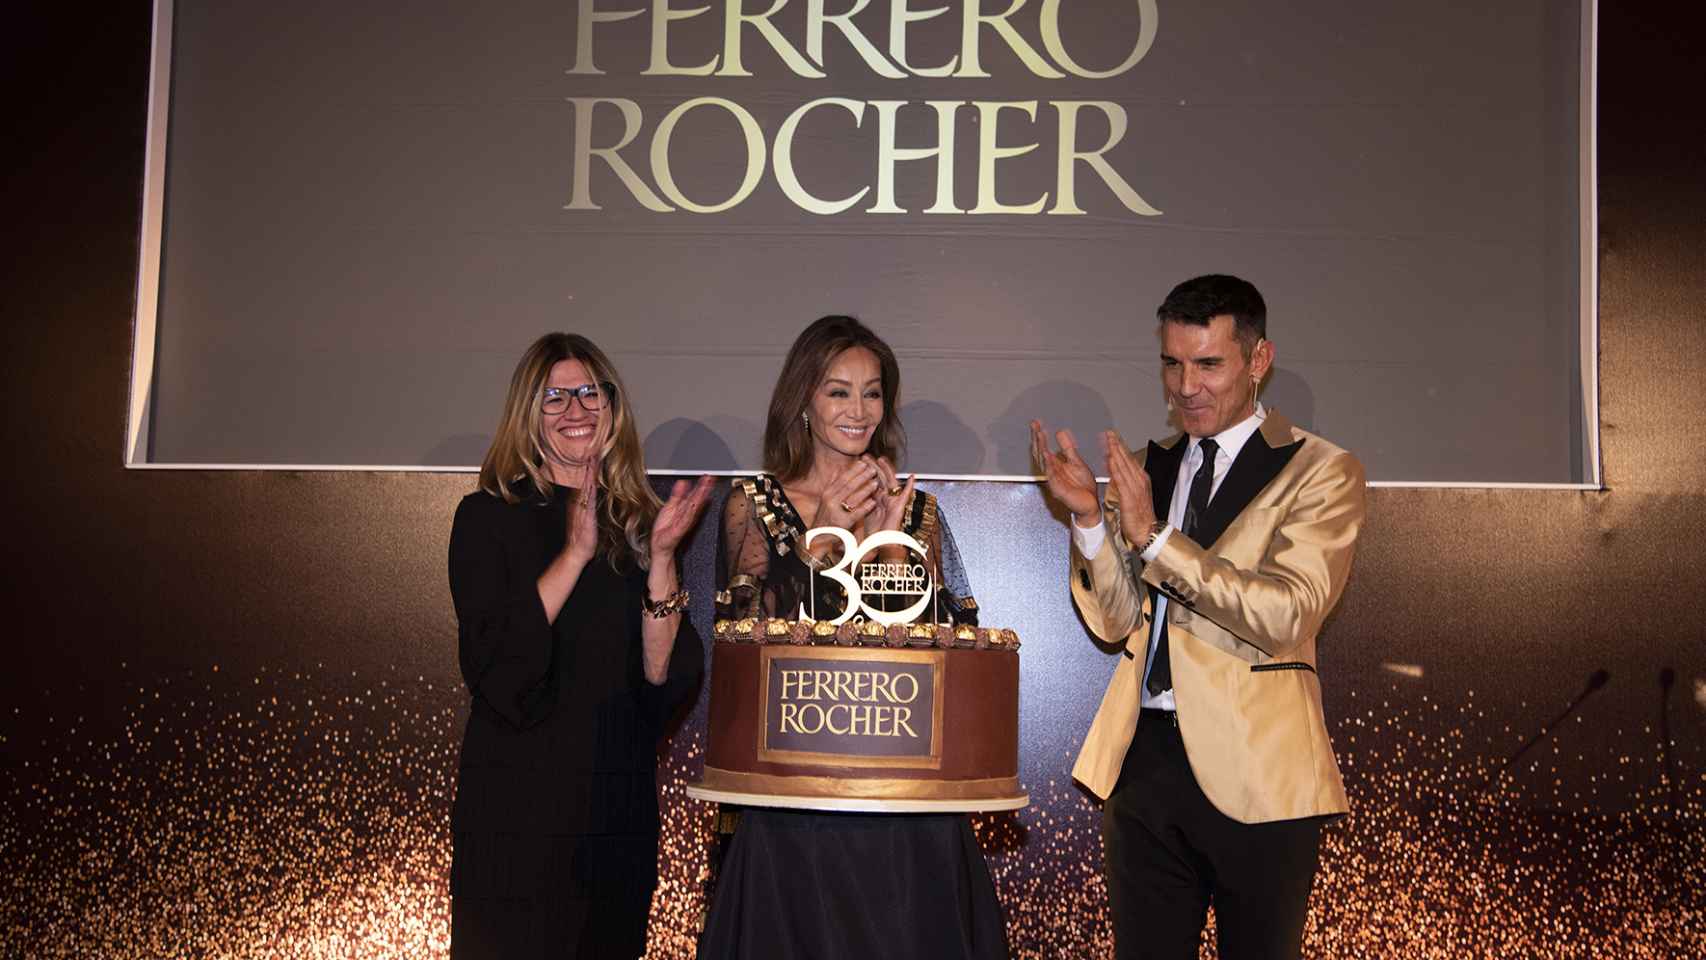 Antonella Sottero, directora general de Ferrero, junto a Isabel Preysler y Jesús Vázquez en la fiesta del 30 aniversario de Ferrero Rocher.